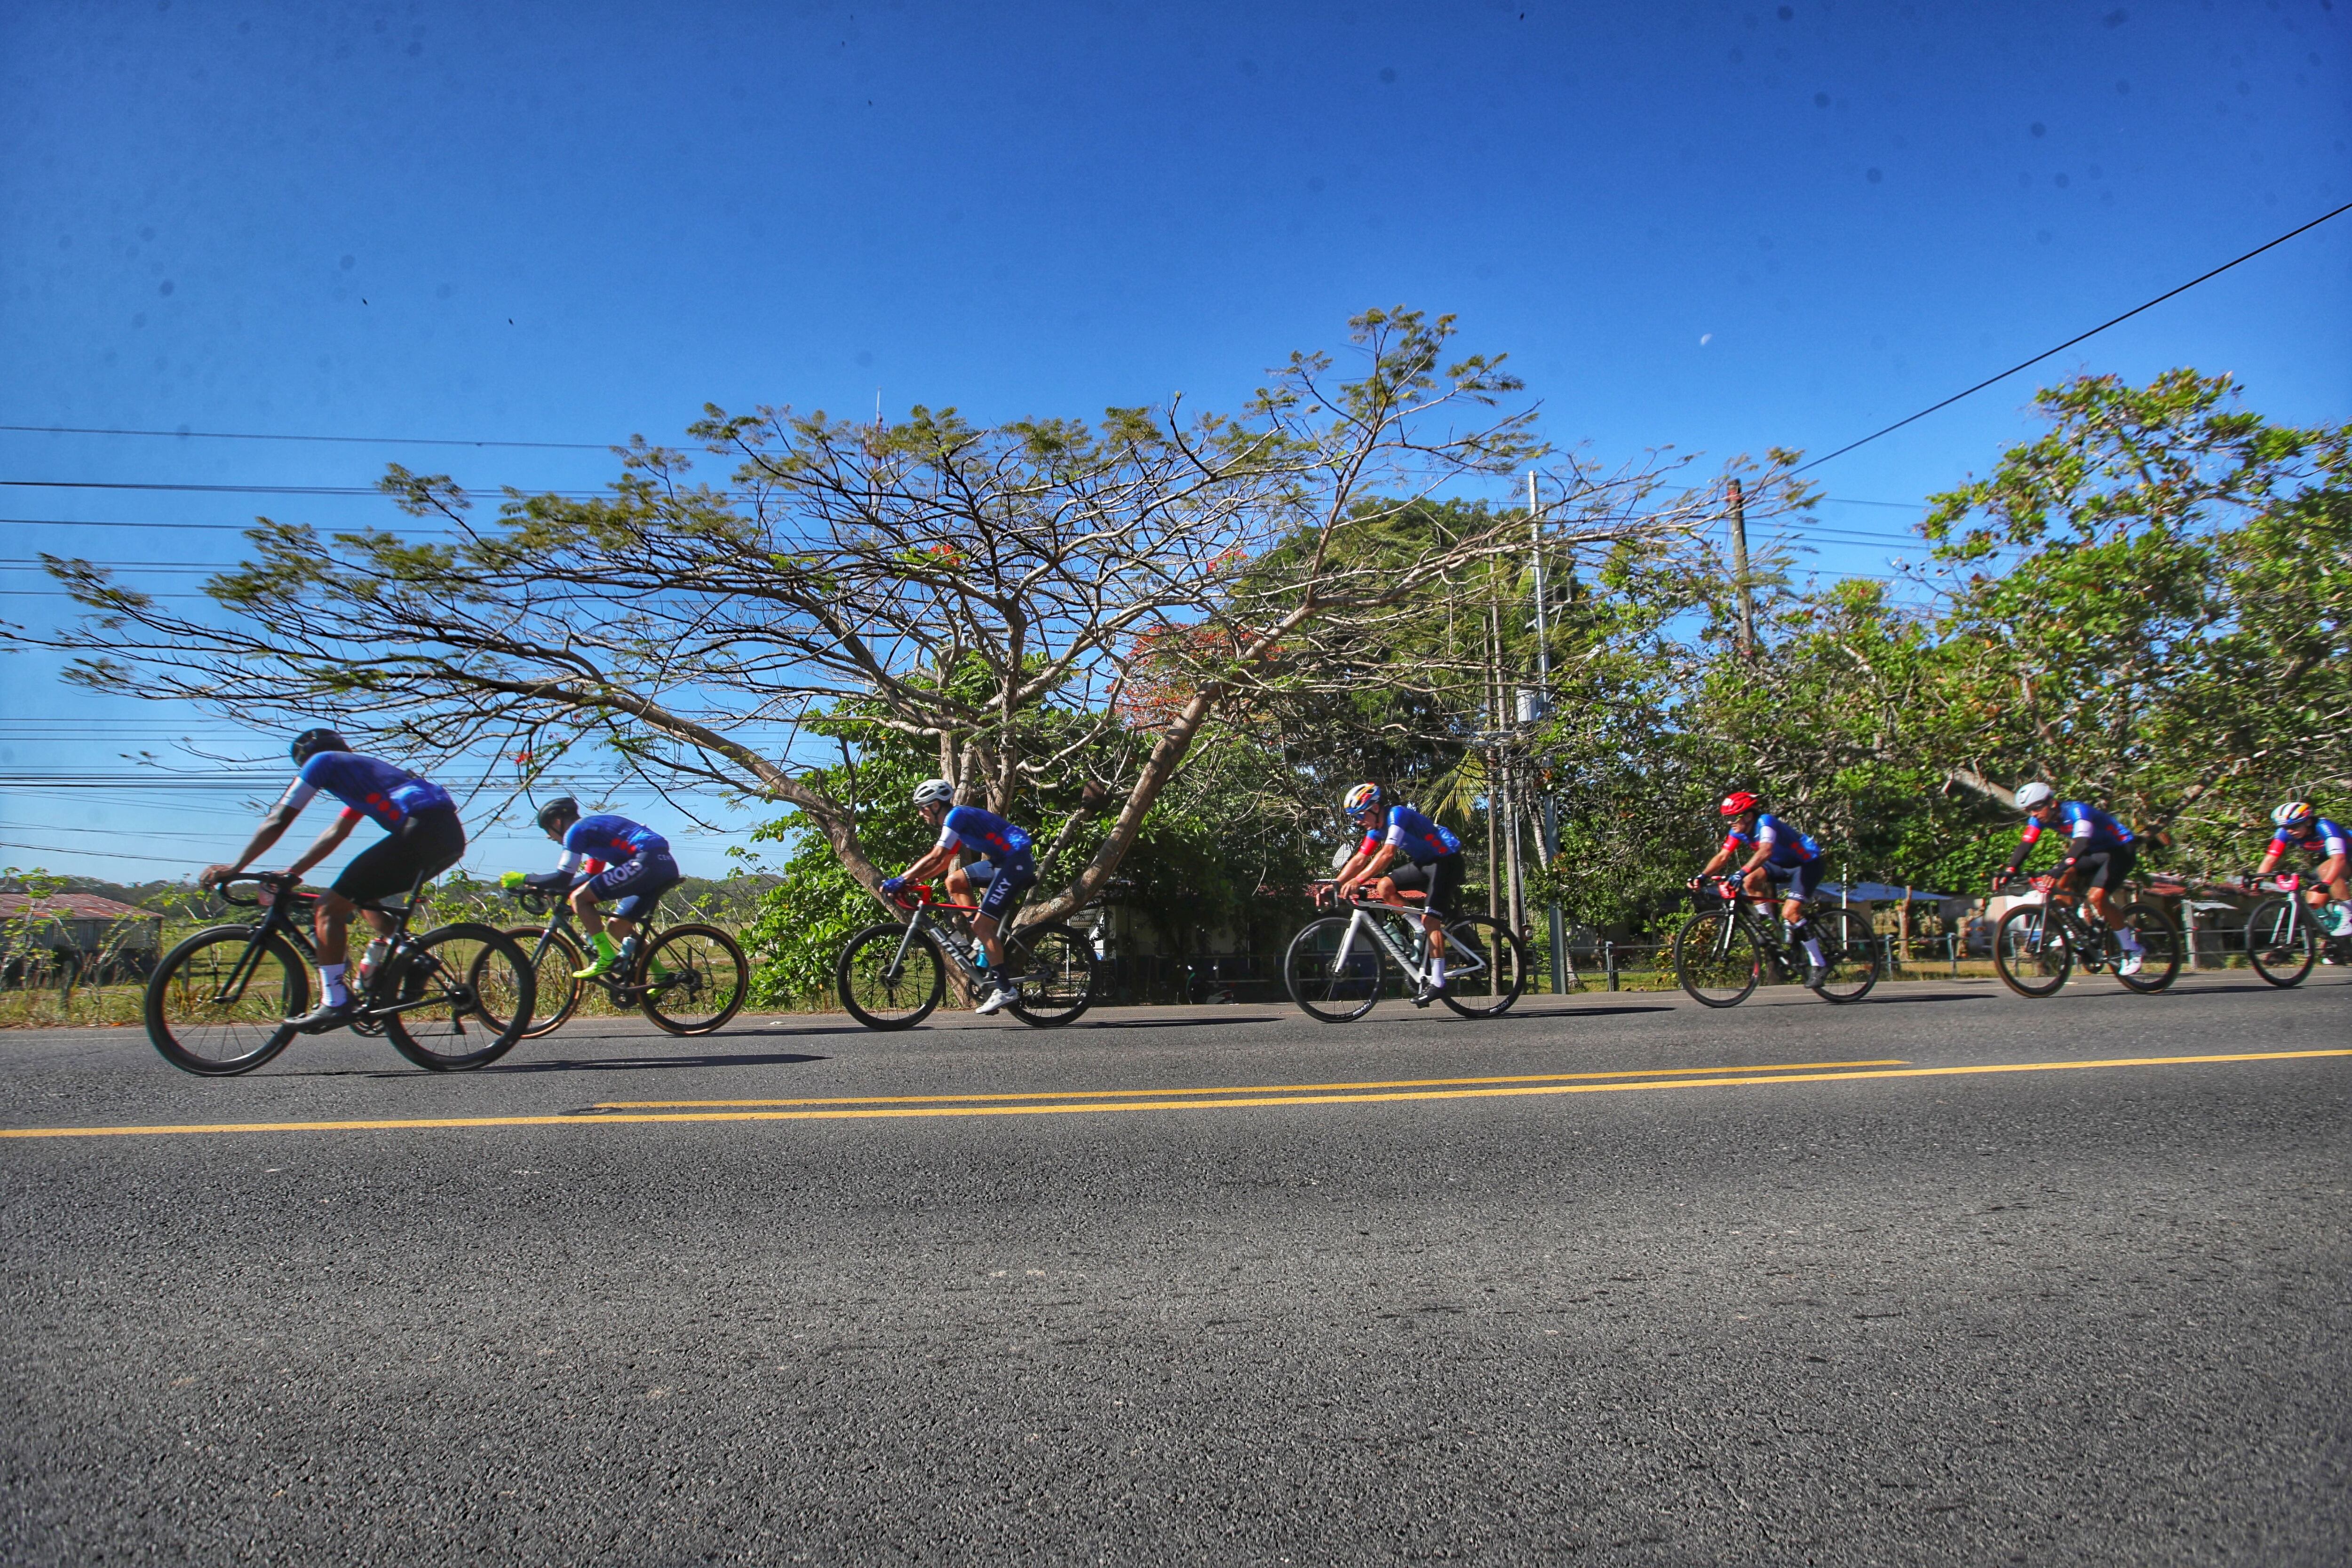 La alta temperatura y el calor sofocante acompañó a los pedalistas en la segunda parte de la competencia, Más aún en el trayecto entre Jacó y Quepos.